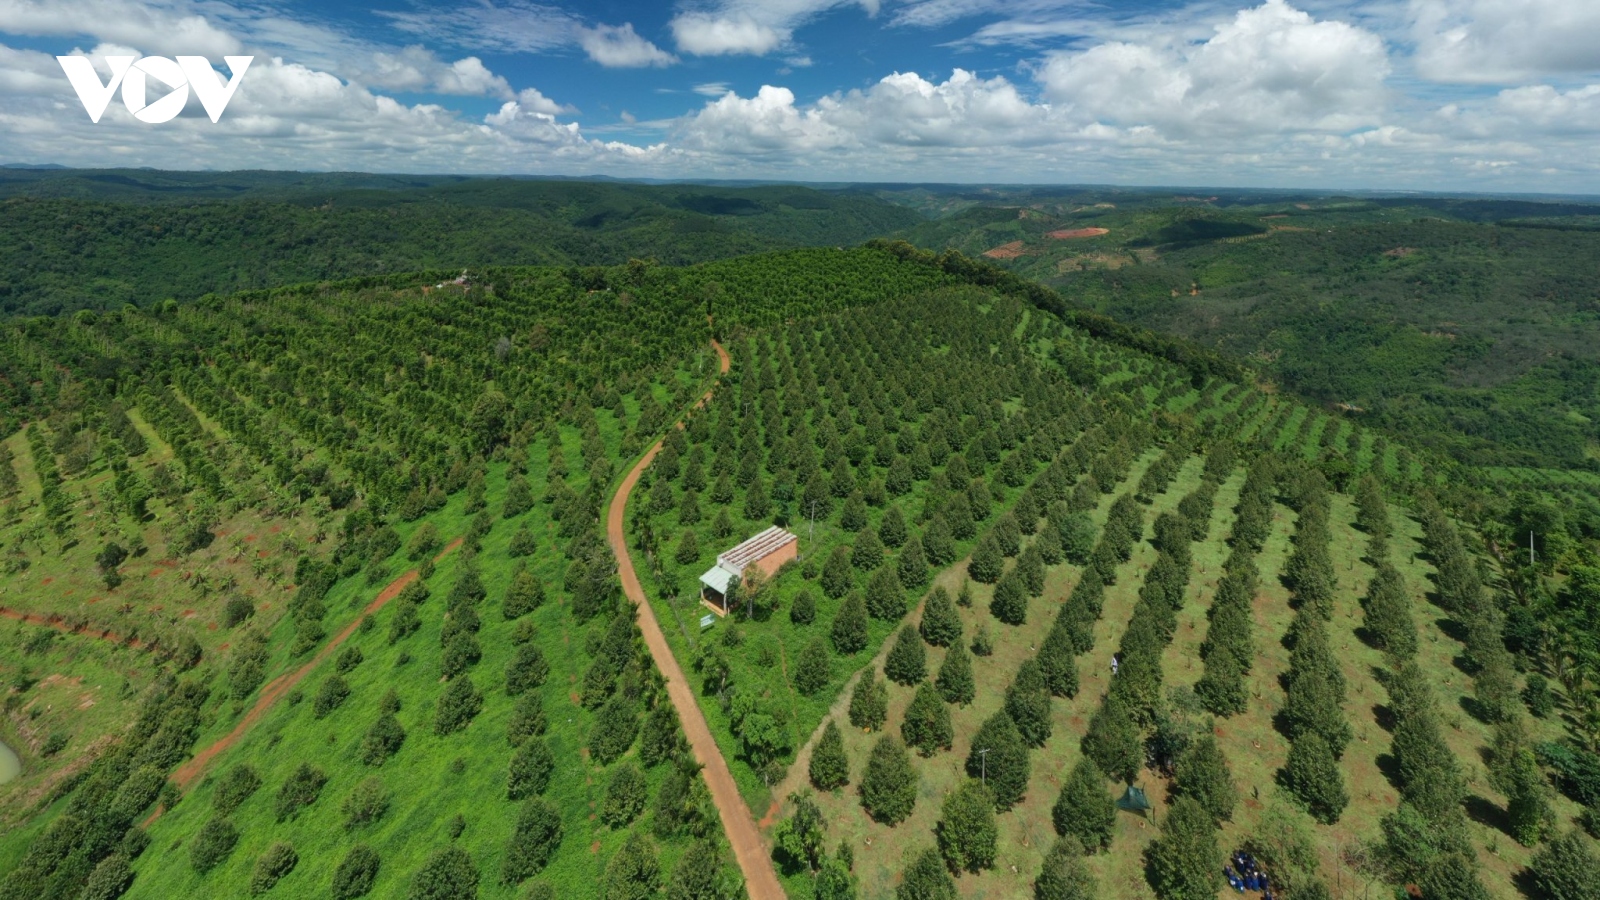 Bước chuyển từ sản xuất nông nghiệp sang kinh tế nông nghiệp ở Đắk Nông